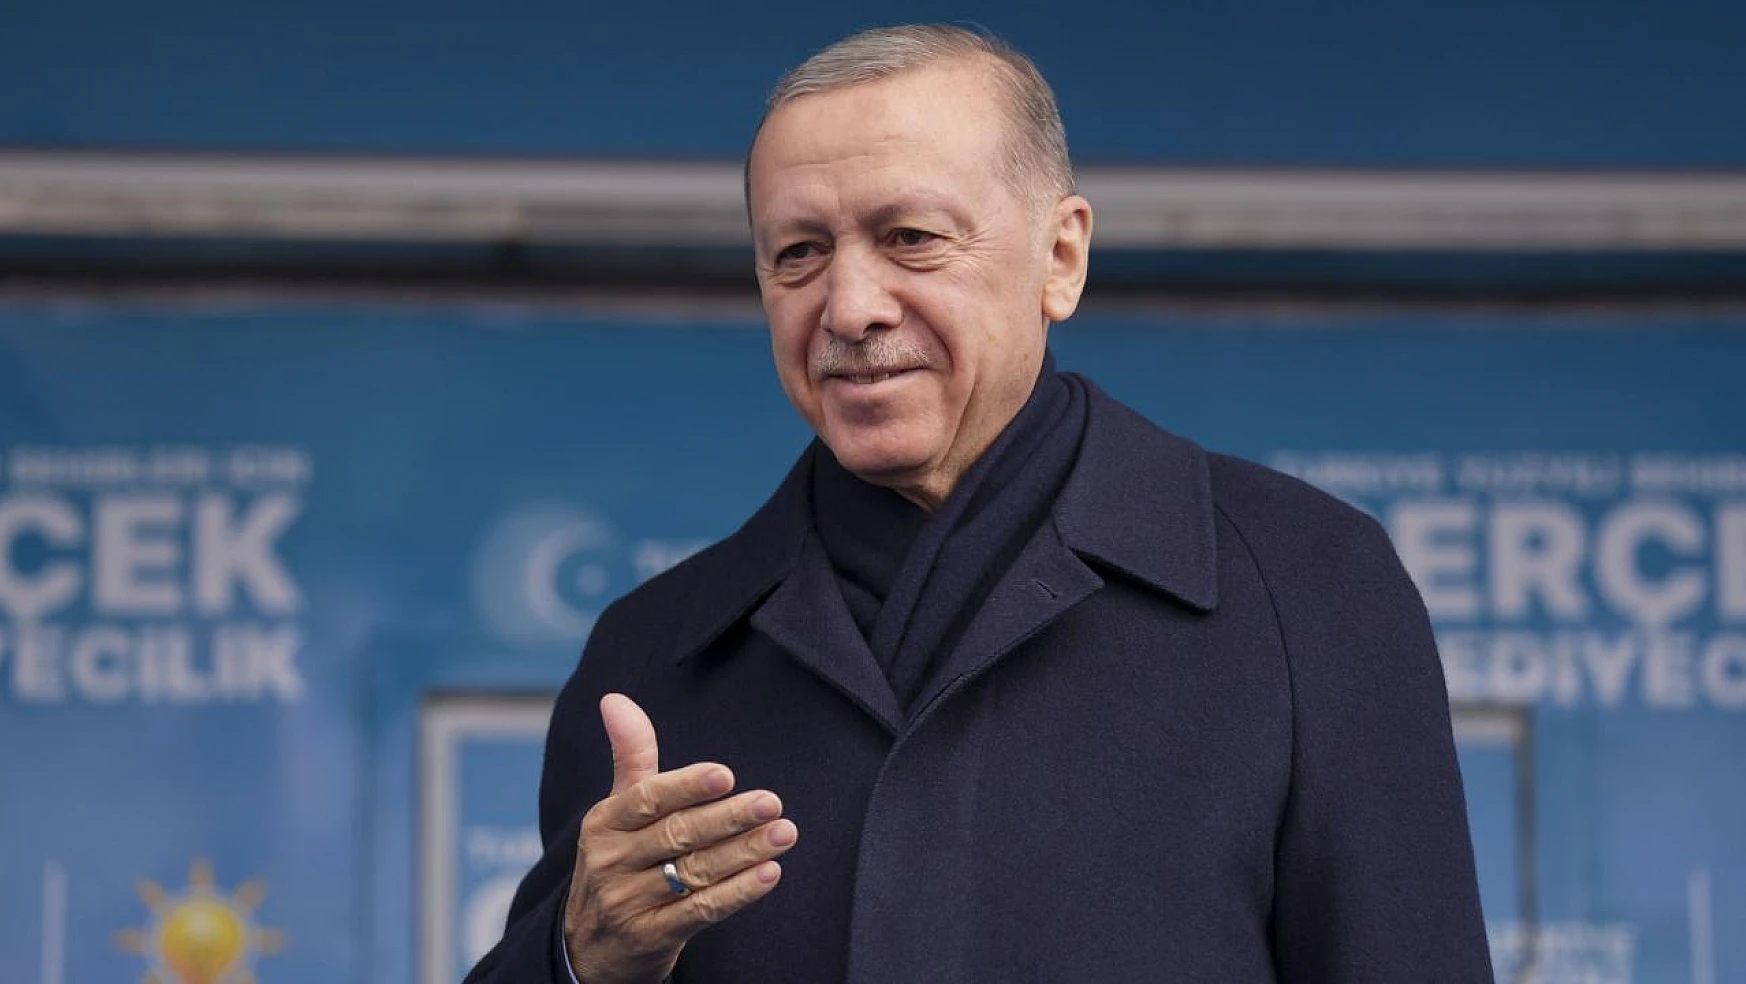 Cumhurbaşkanı Erdoğan'ın Konya mitingi saat kaçta başlayacak? 